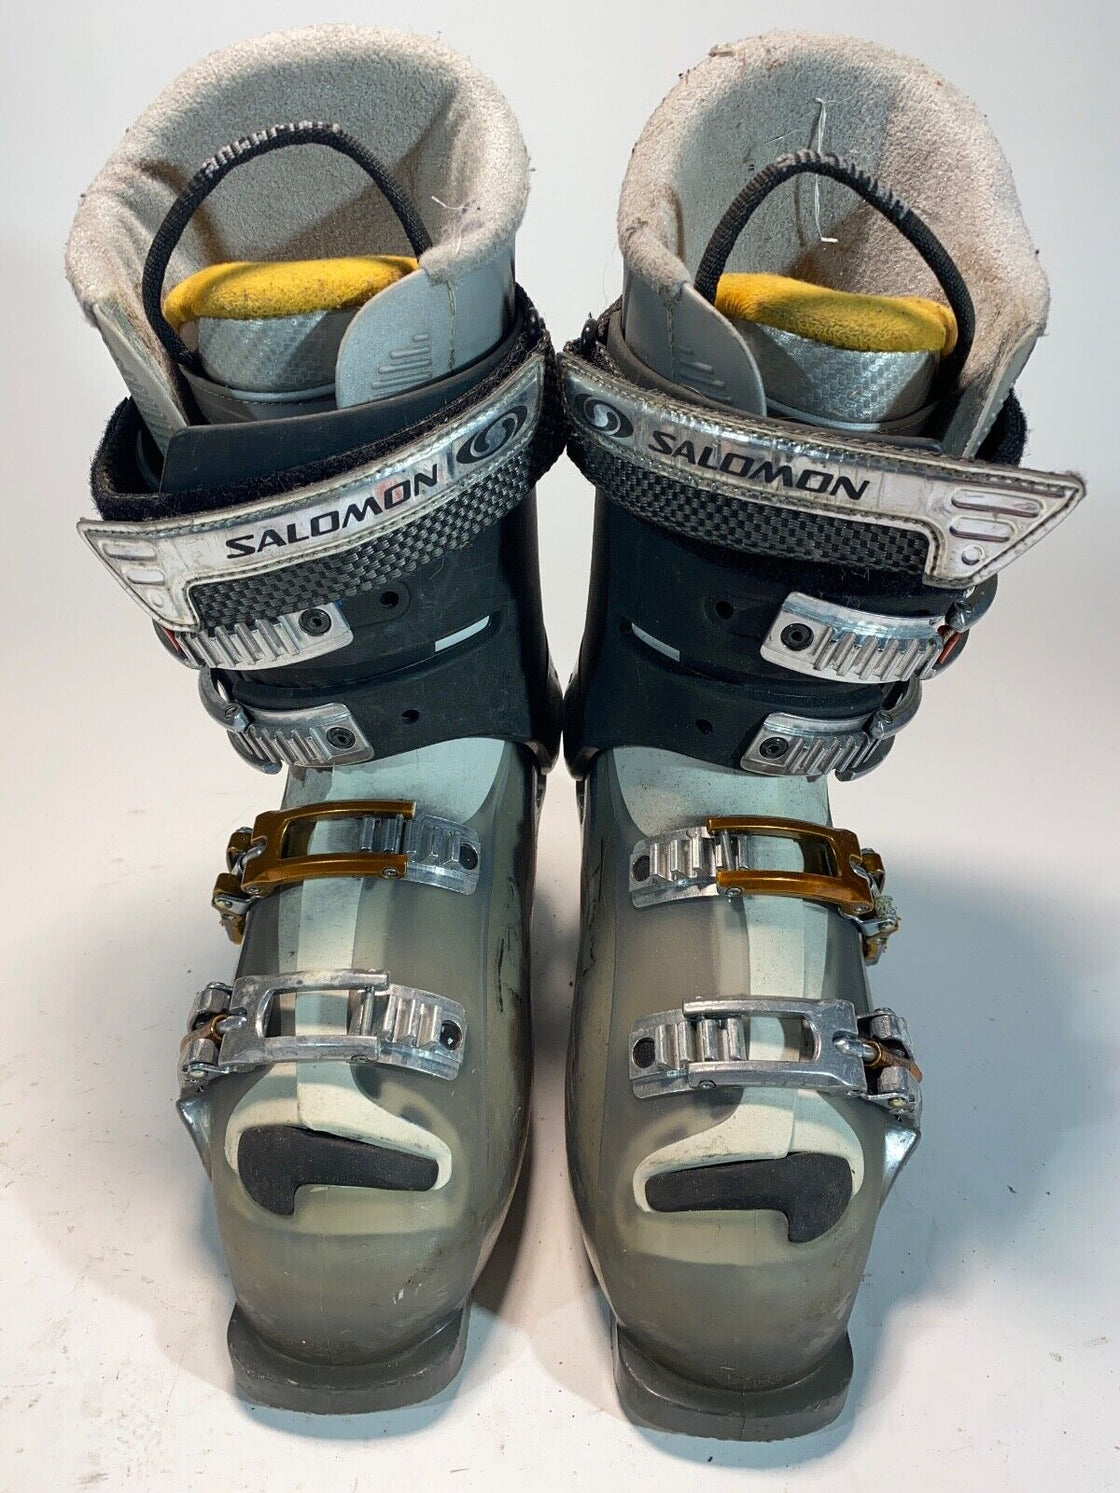 SALOMON Alpine Ski Boots Downhill Boots Size Mondo 263 mm, Outer Sole 305 mm